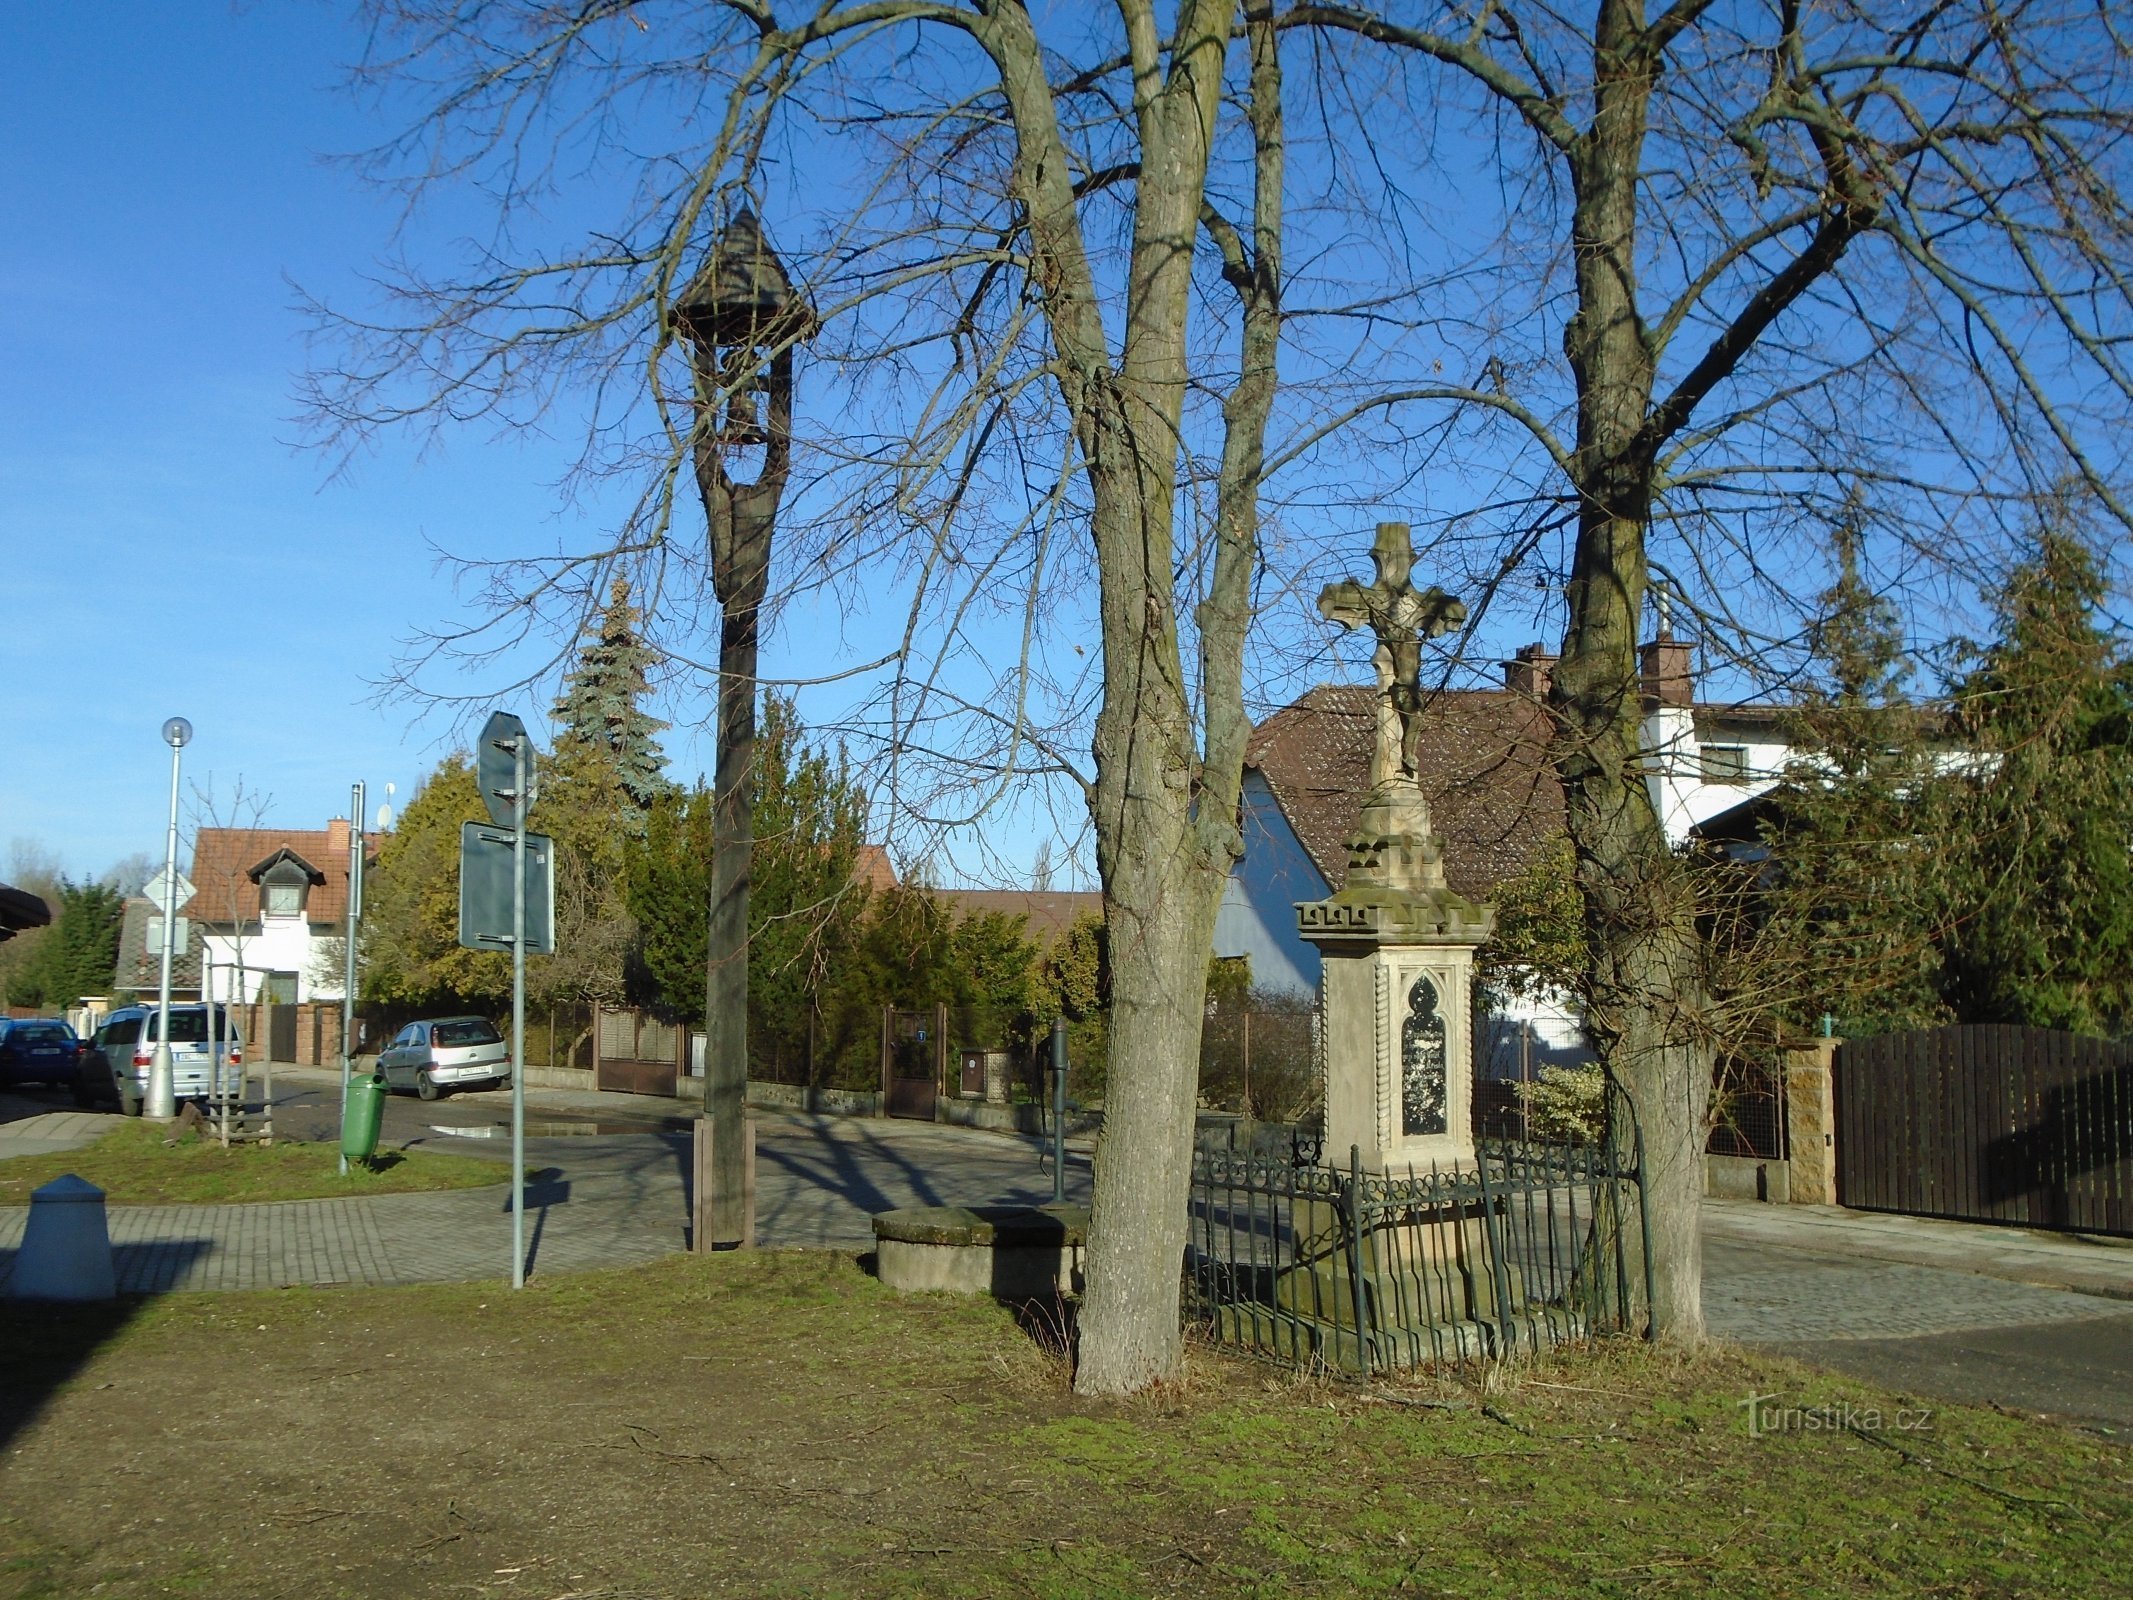 Zvonik i križ u ulici Machková (Třebeš)